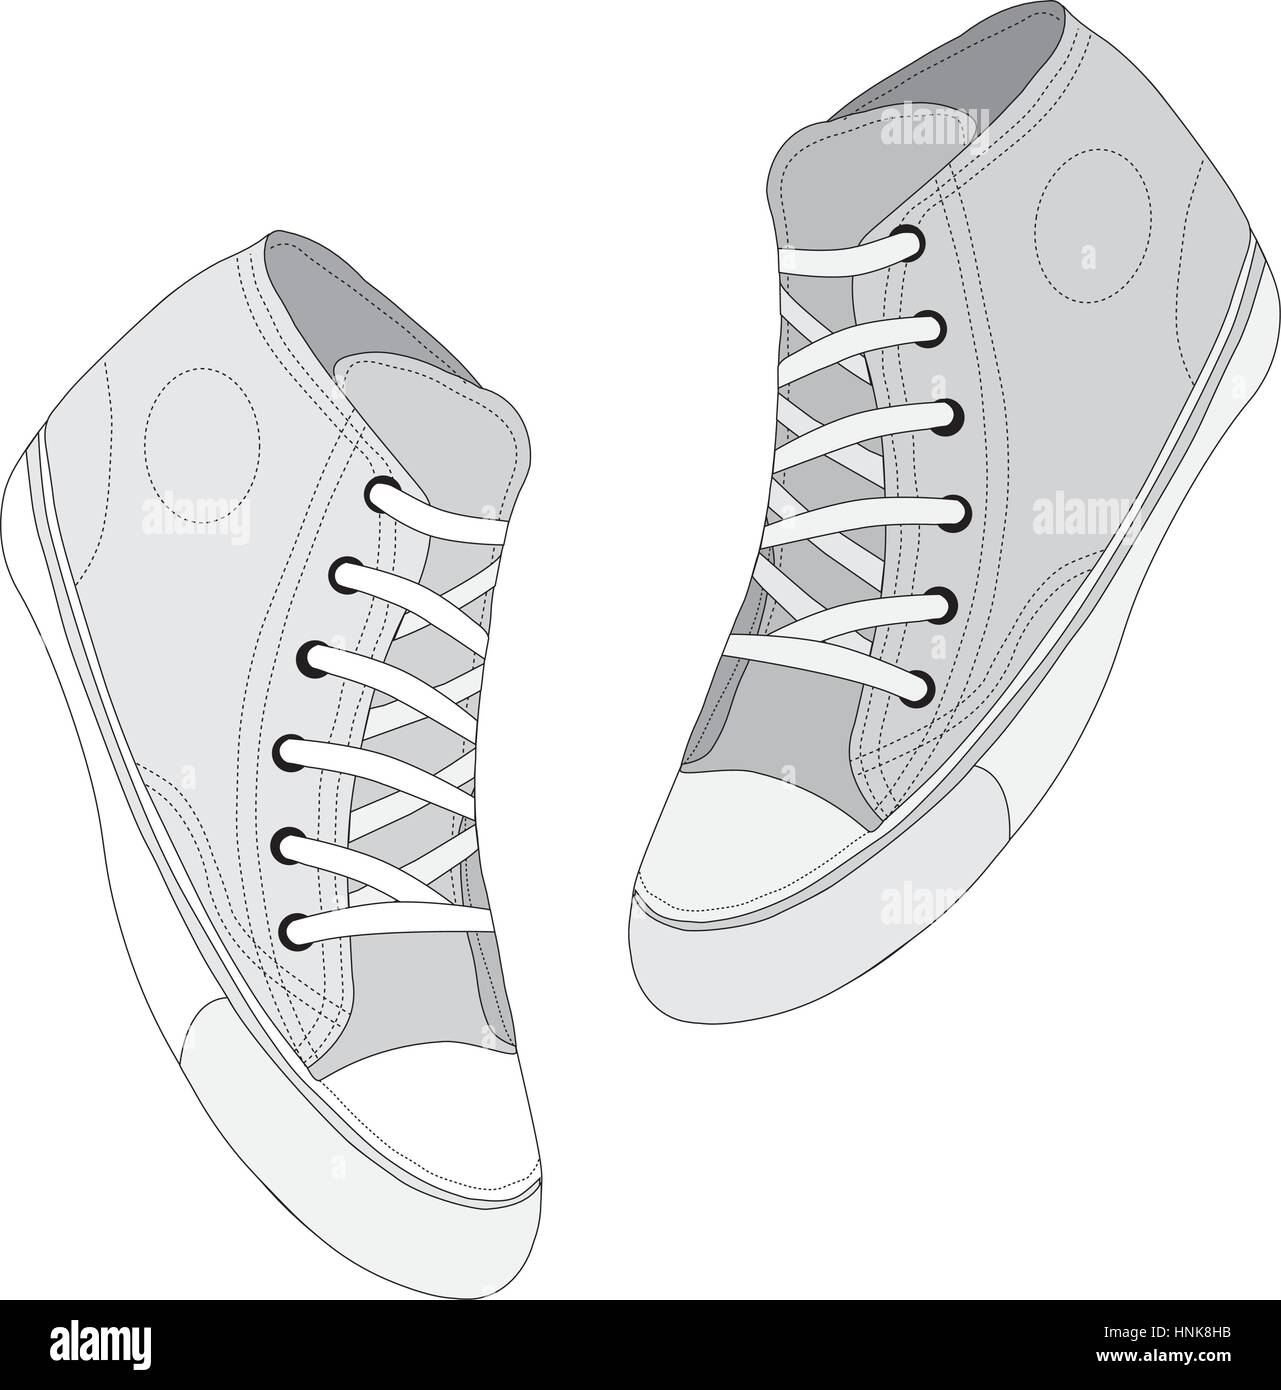 Klassische Sneaker skizziert. Vektor, voll editierbar. Set von Sport-Schuhe oder Turnschuhe-Icons in verschiedenen Ansichten. Schuhe und Spitze, Bekleidung und Street styl Stock Vektor